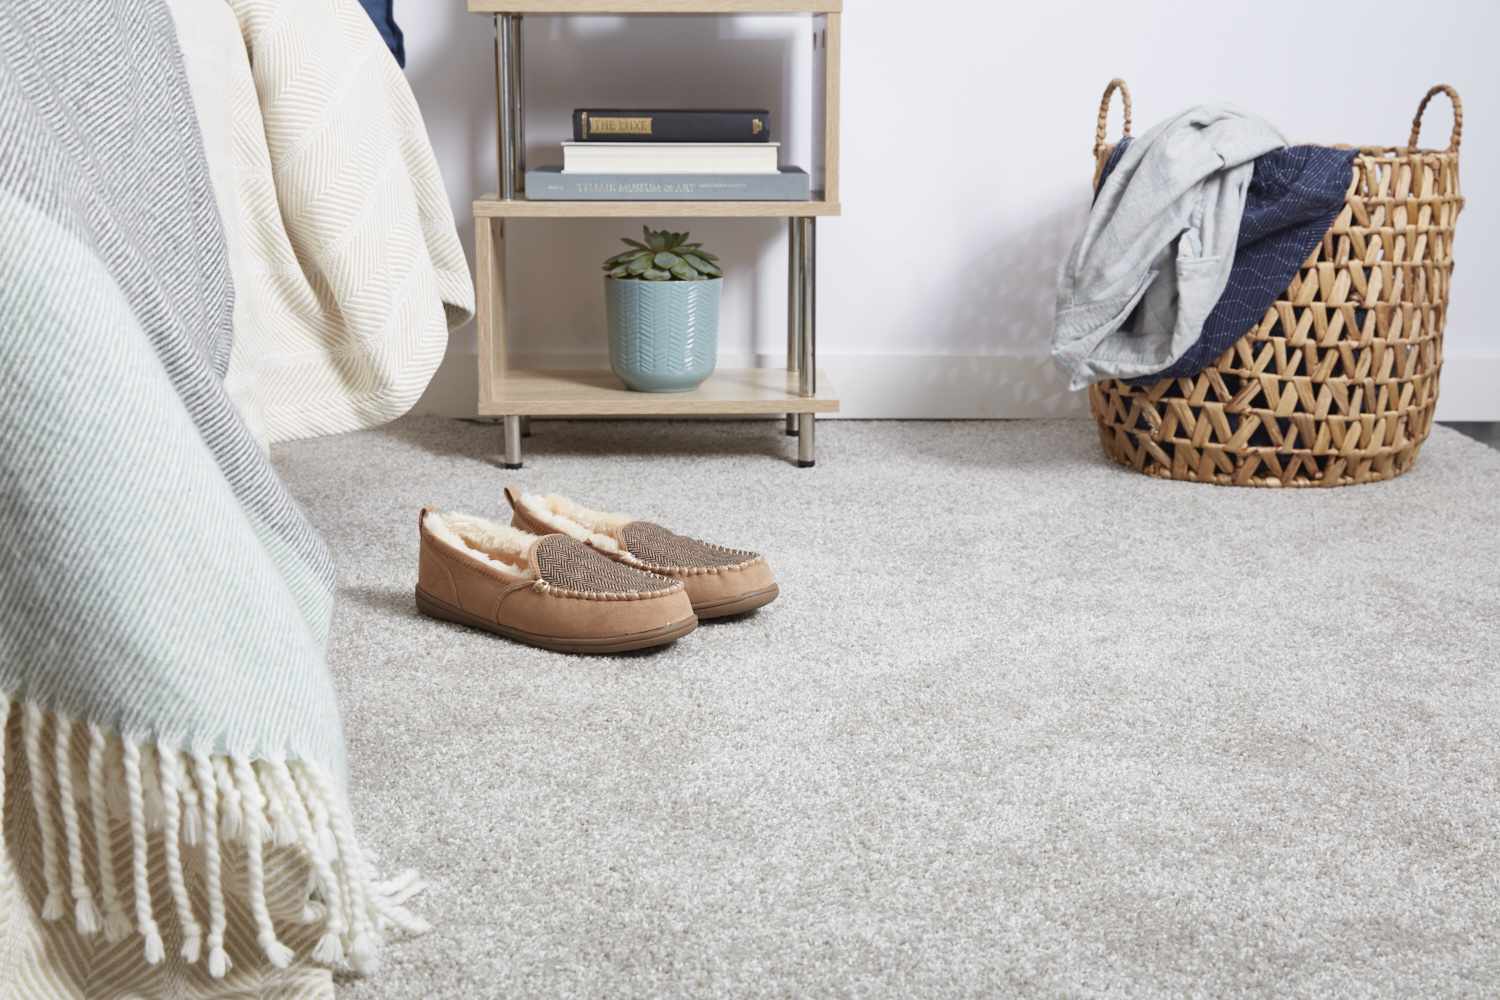 Teppichboden mit Wollschuhen neben dem Bett und geflochtenem Wäschekorb, vor dem Nachttisch